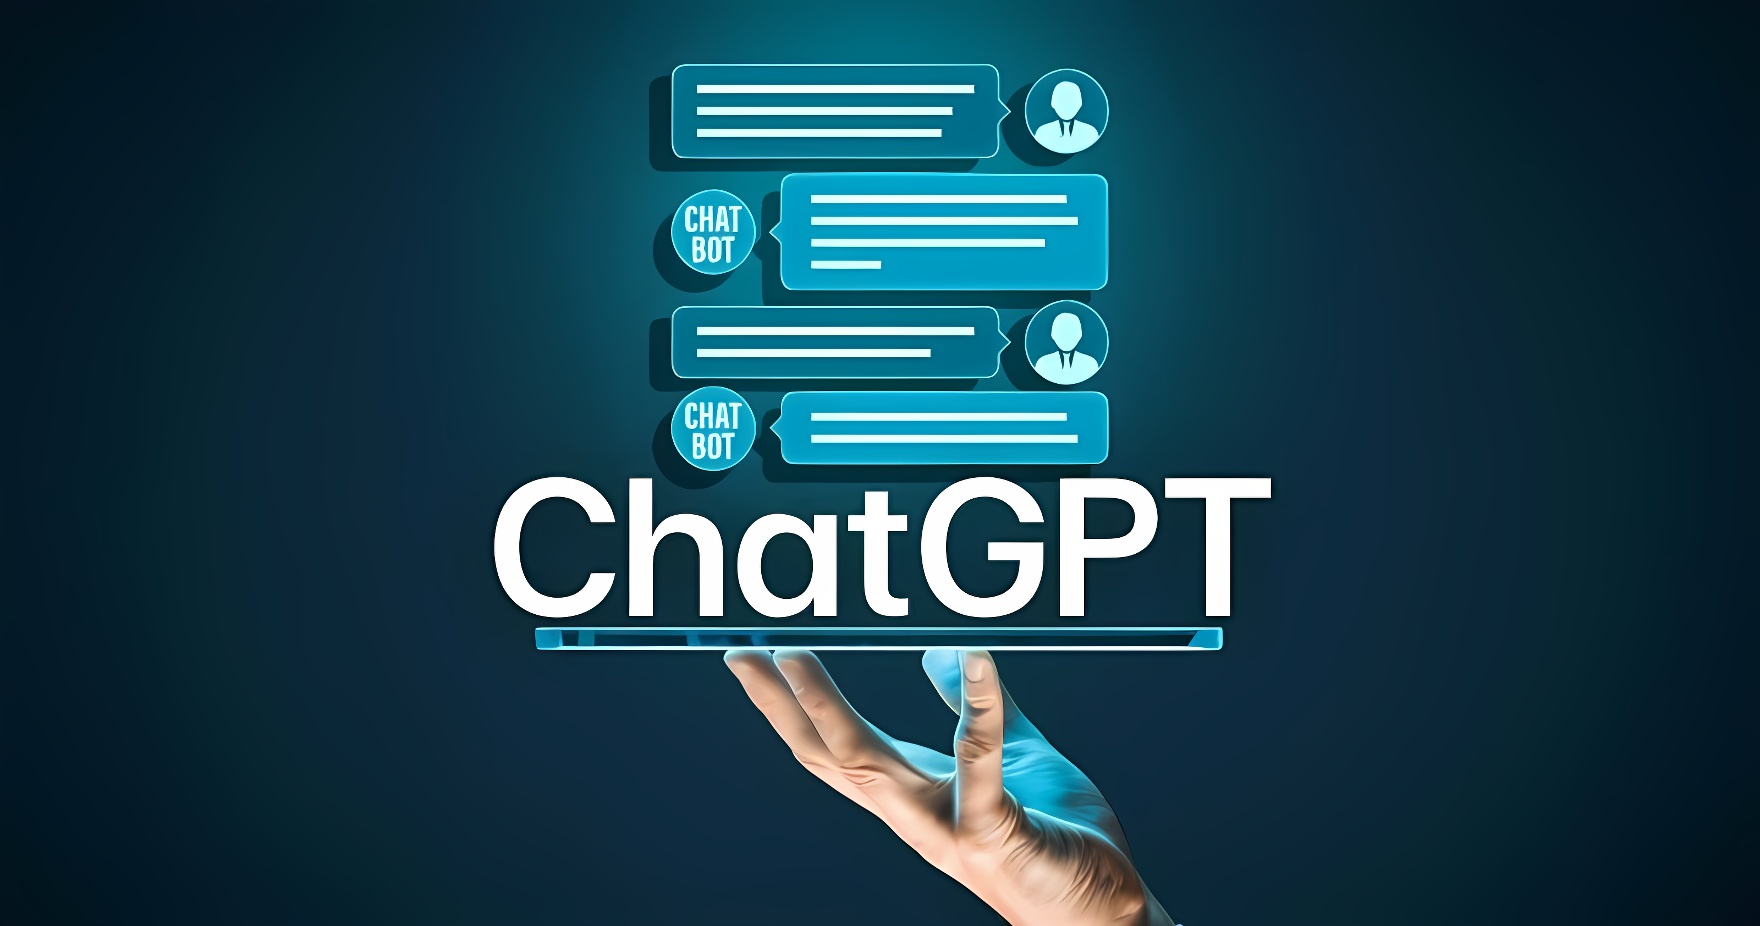 图中展示了一只手在触摸浮现的ChatGPT图标和对话框，象征着交互式人工智能和聊天机器人技术。